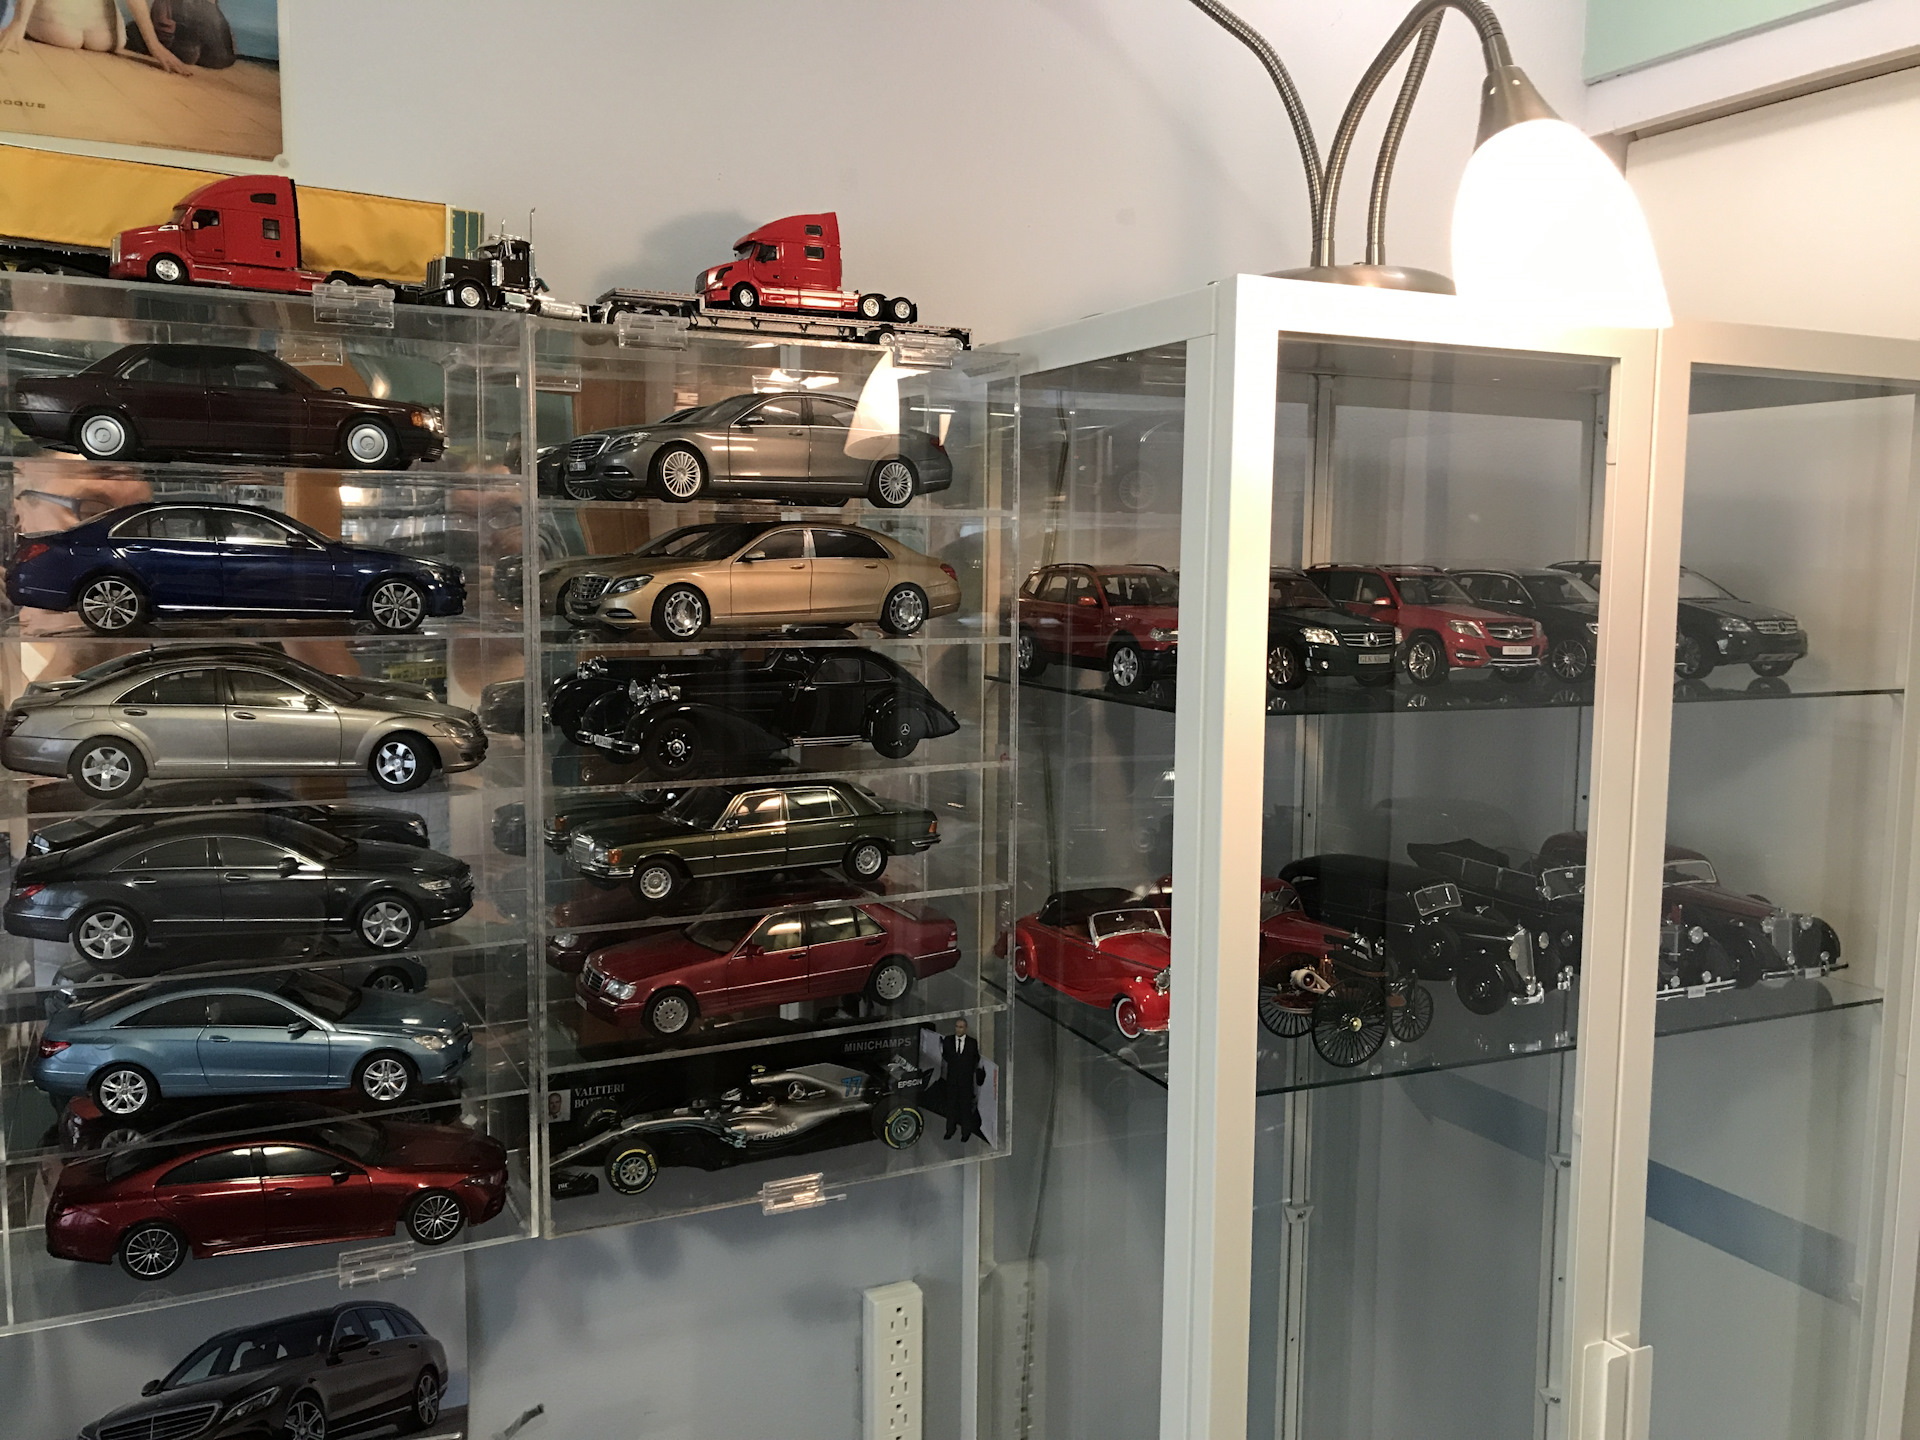 Интернет магазины моделей машин. Коллекция моделей автомобилей. Коллекционирование моделей автомобилей. Коллекция масштабных моделей.